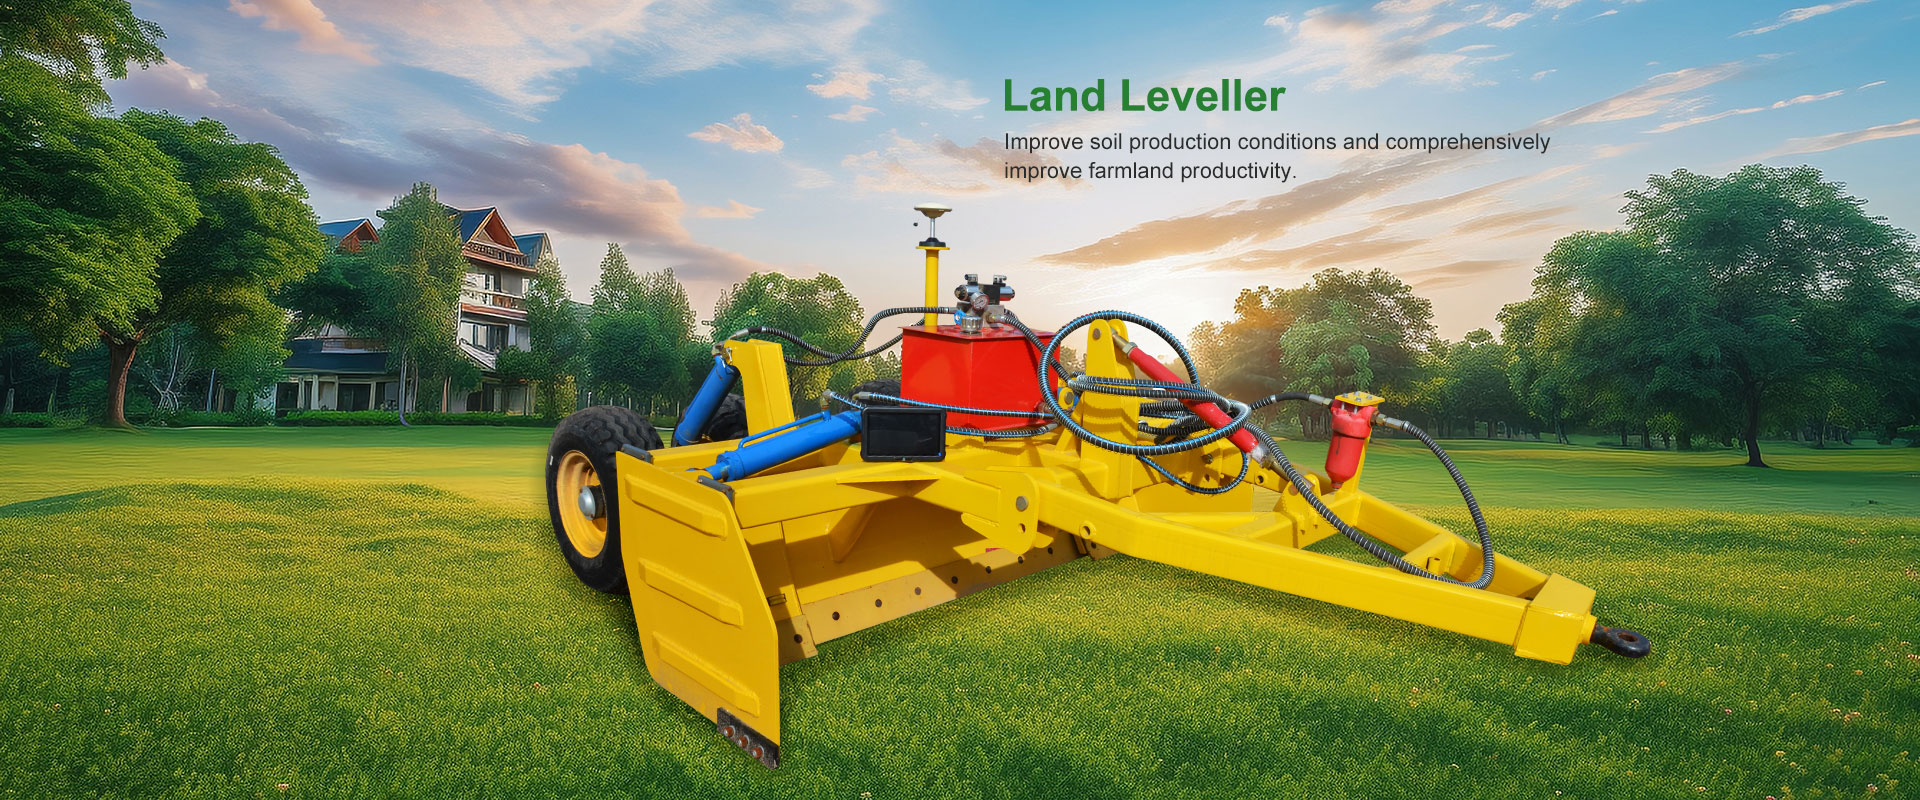 Land Leveller Manufacturer